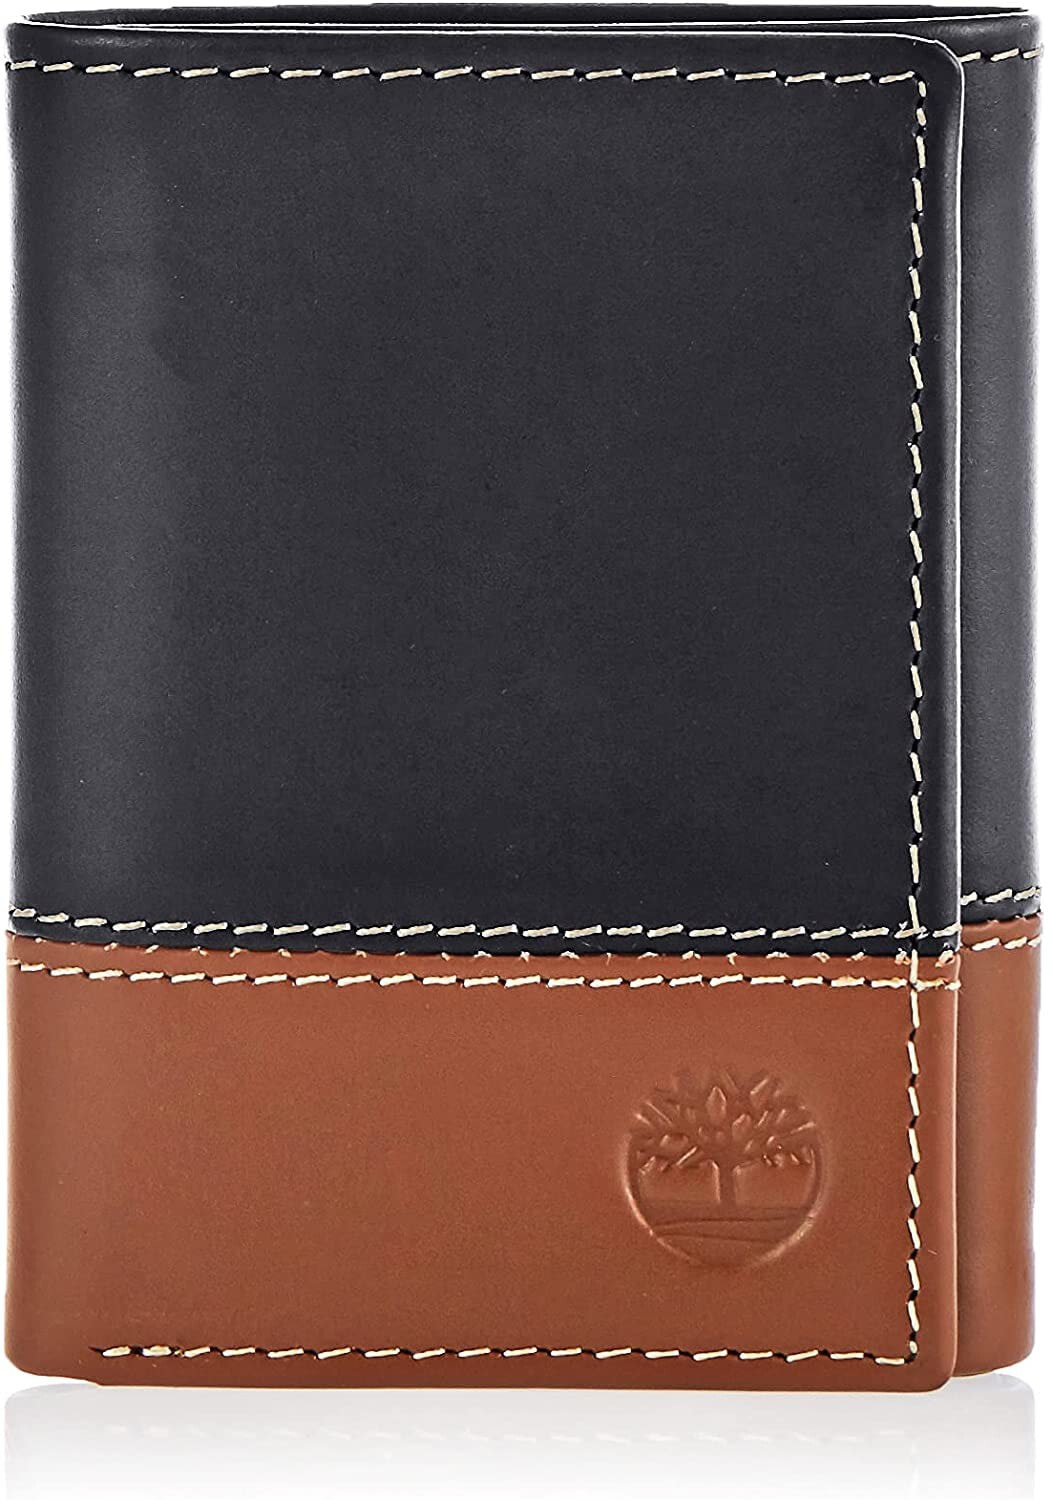 Мужское портмоне кожаное вертикальное черное без застежки  Timberland Men's Leather Trifold Wallet with ID Window